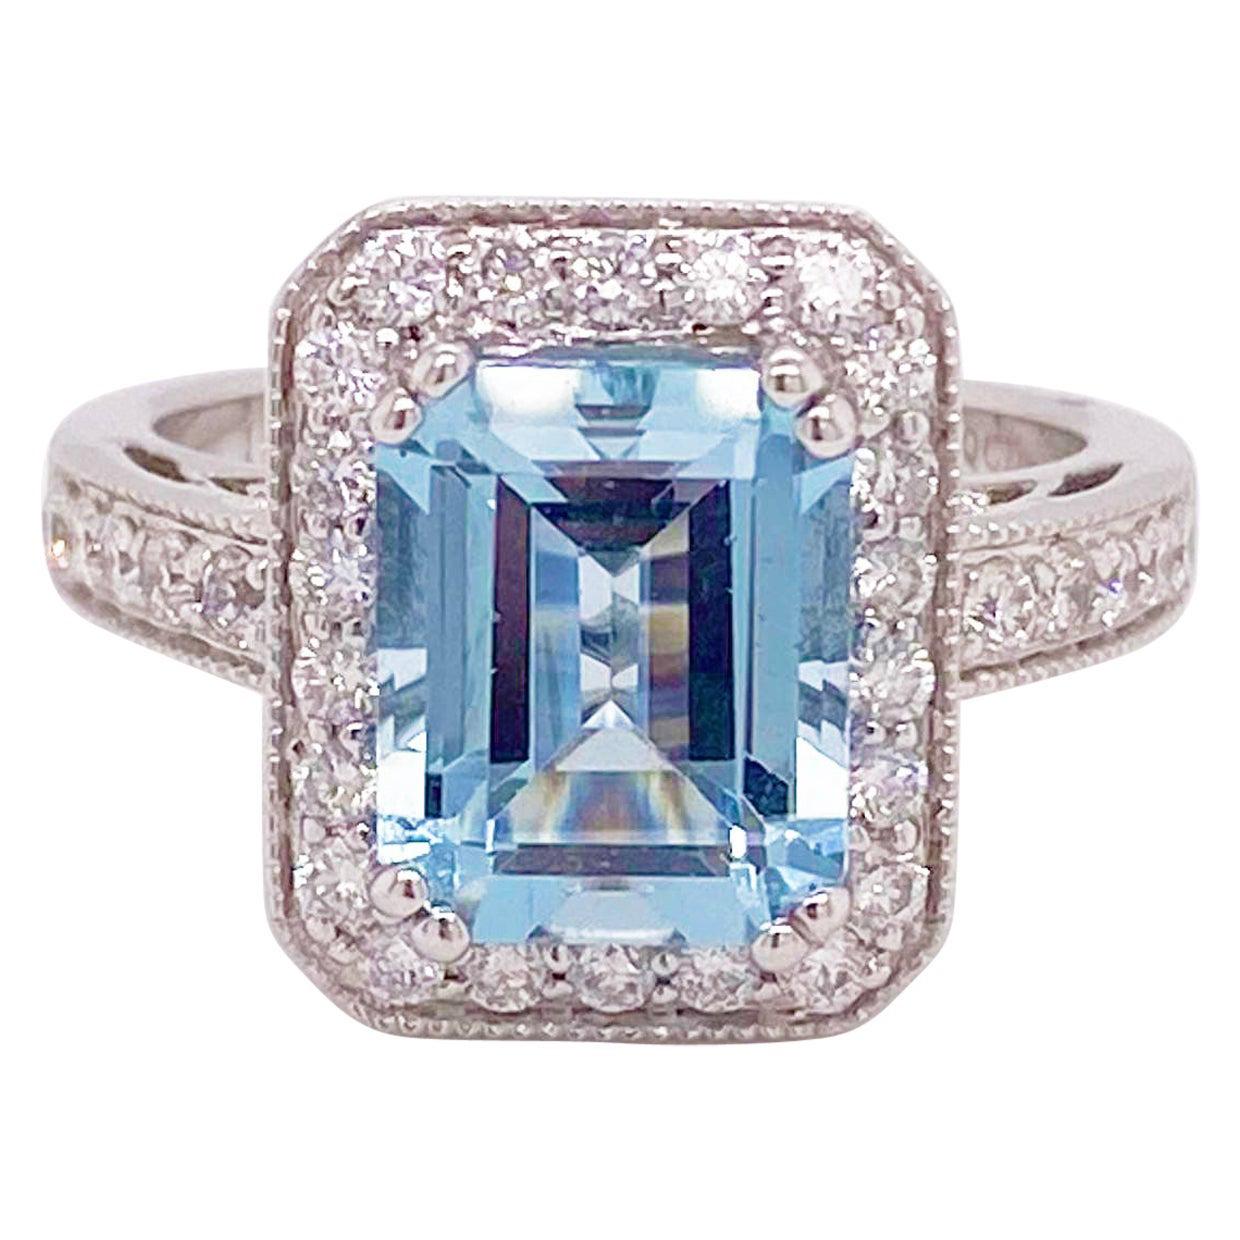 Aquamarine Diamond Ring, 14 Karat White Gold, Halo, 3 Carat Engagement Ring